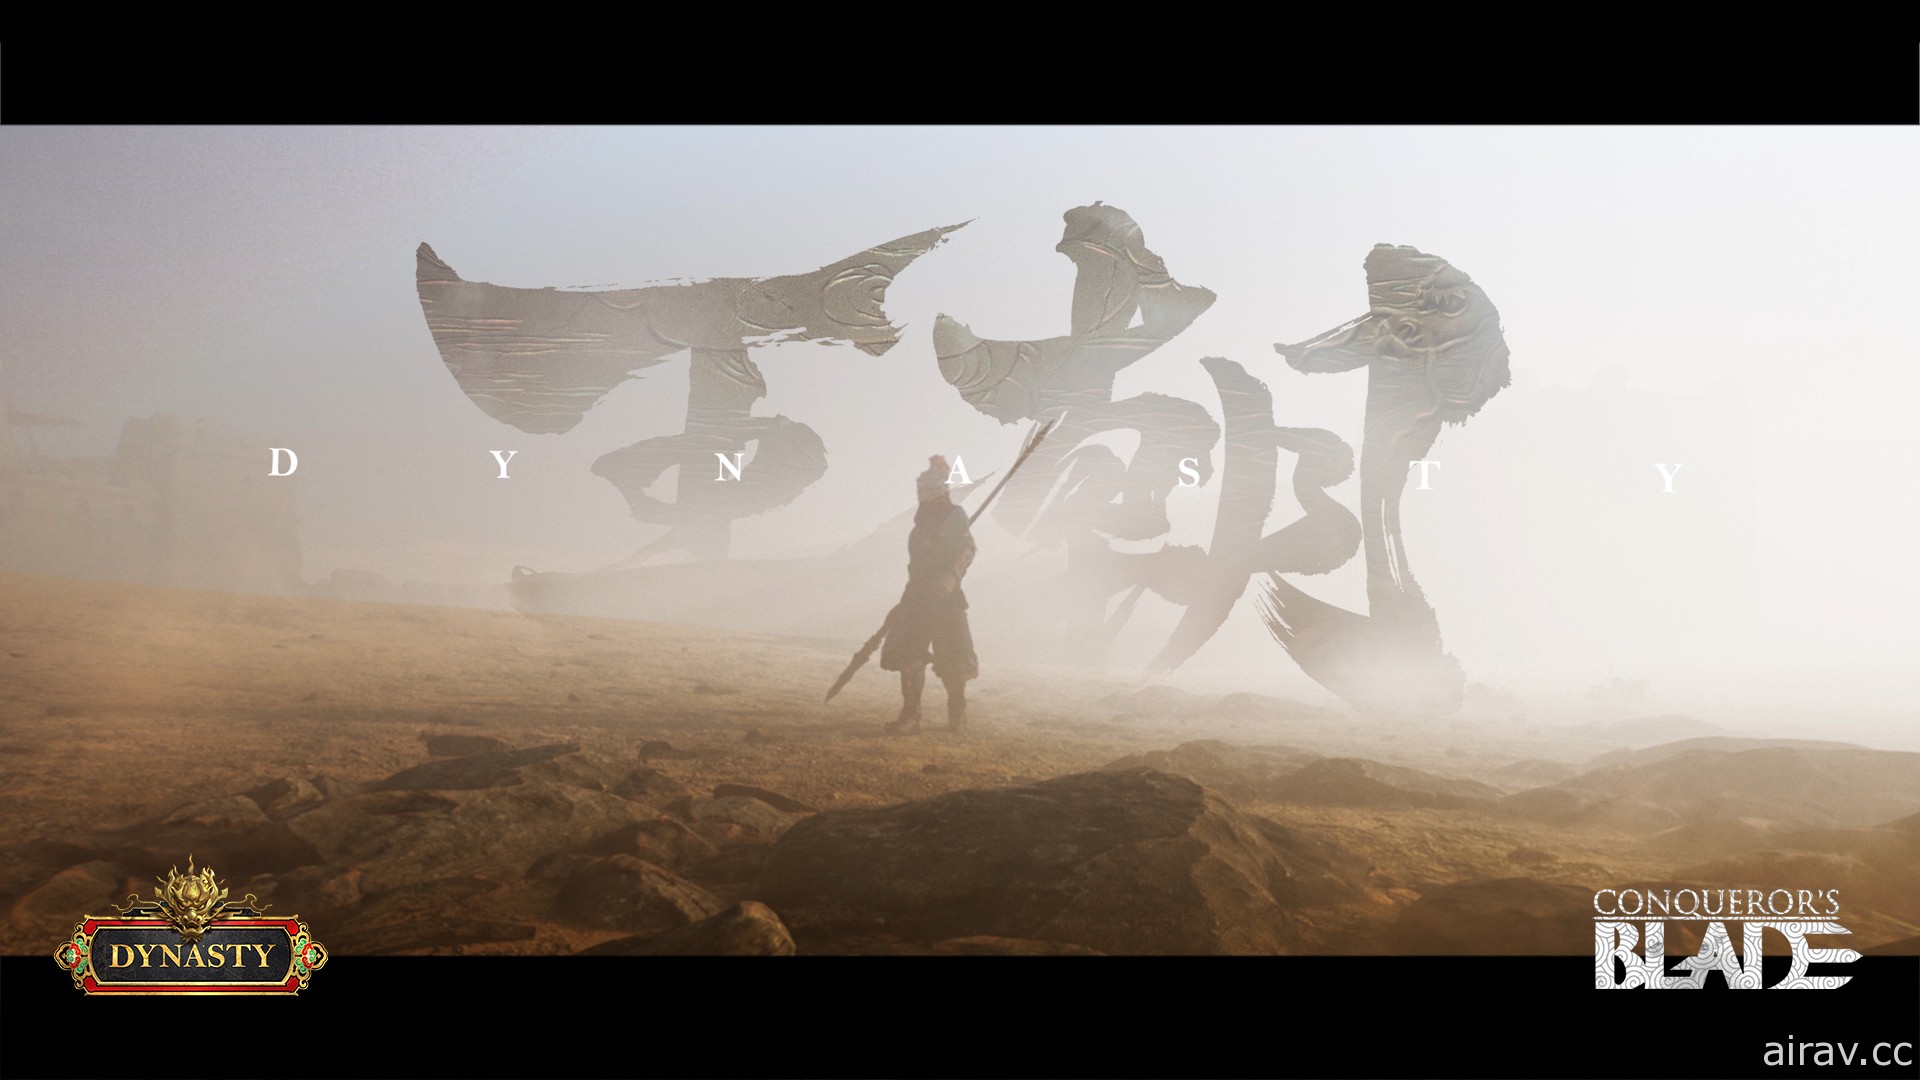 《戰意》釋出東方新賽季《王朝》預告影片 搶先揭開新兵團背景設定